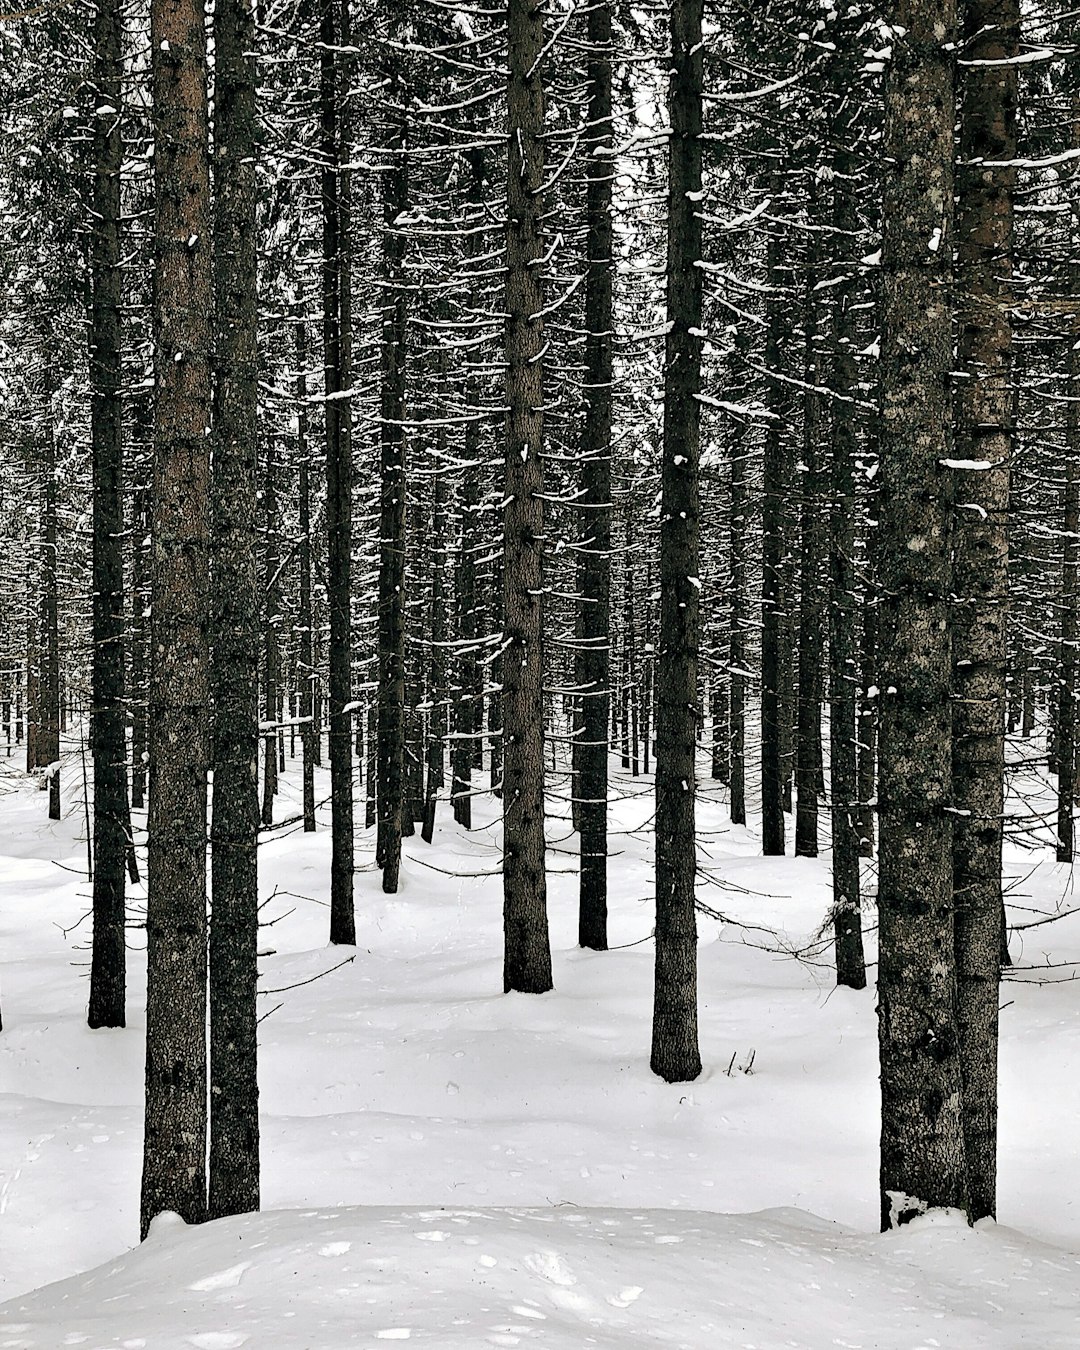 Spruce-fir forest photo spot Paneveggio - Pale di San Martino Belluno